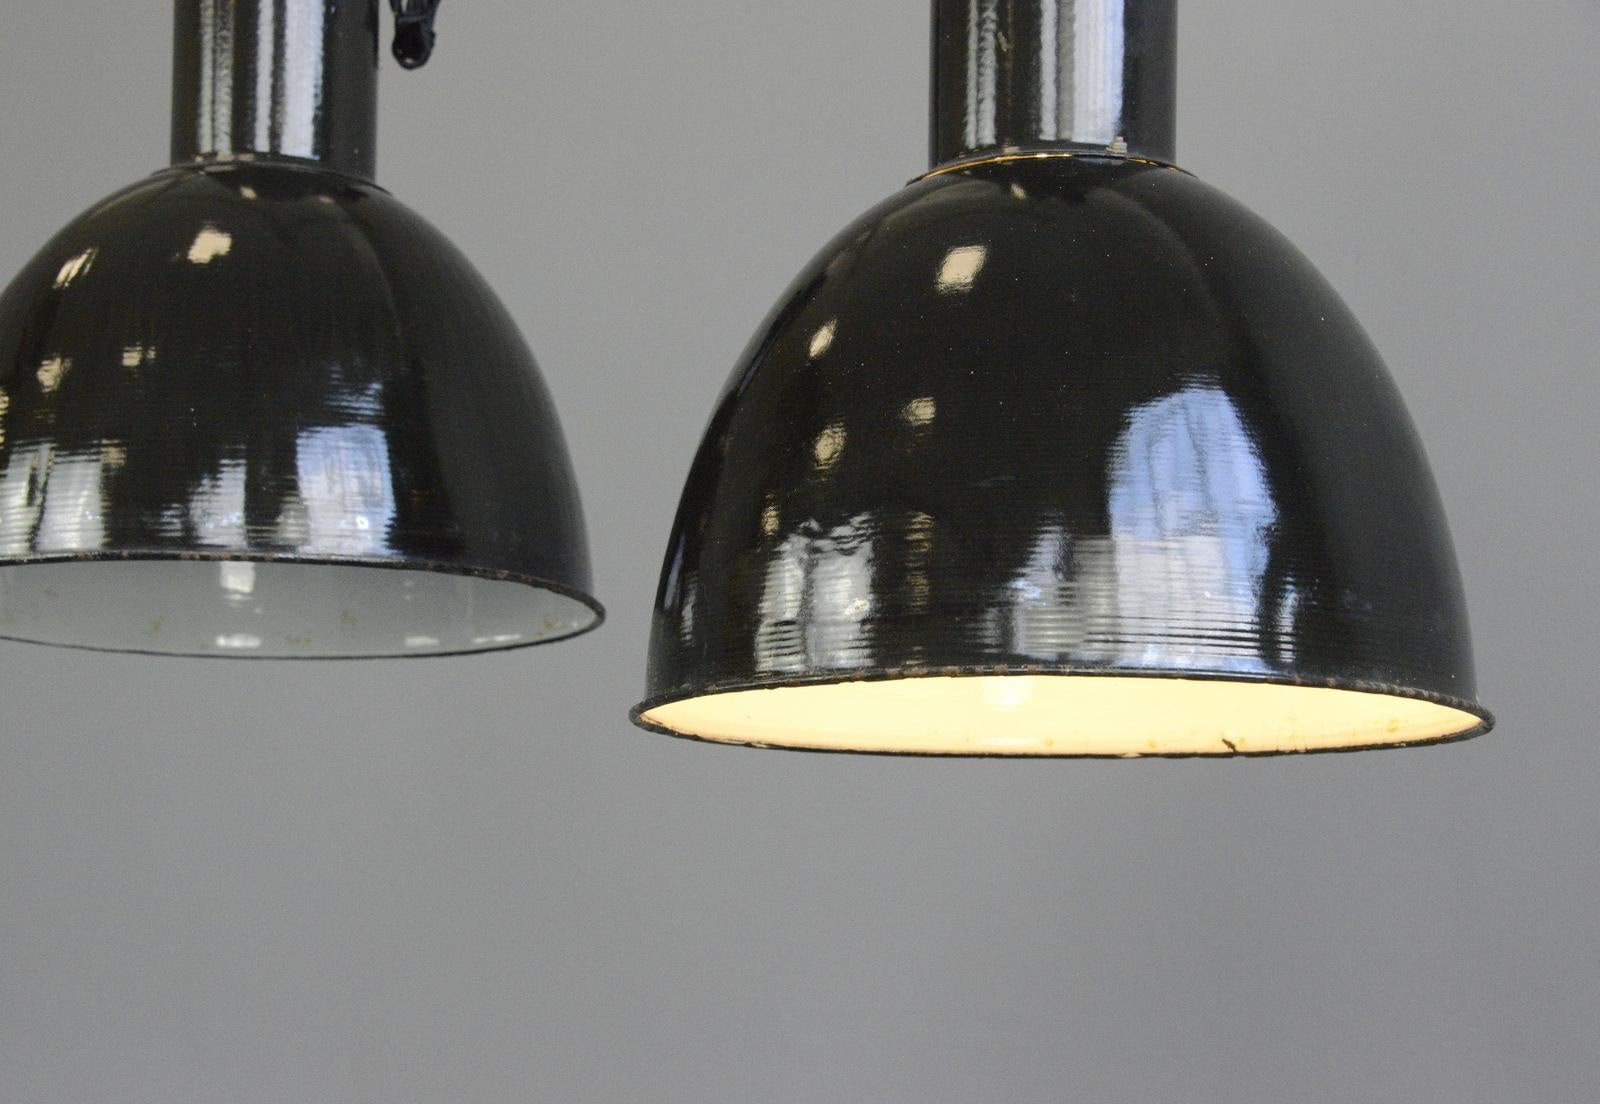 Lampes de l'usine Bauhaus en émail noir, vers les années 1930

- Le prix est par lampe
- Nuances d'émail noir vitreux
- Réflecteurs intérieurs en émail blanc
- Plateaux en fonte
- Livré avec 100cm de câble noir tressé
- Livré avec une chaîne